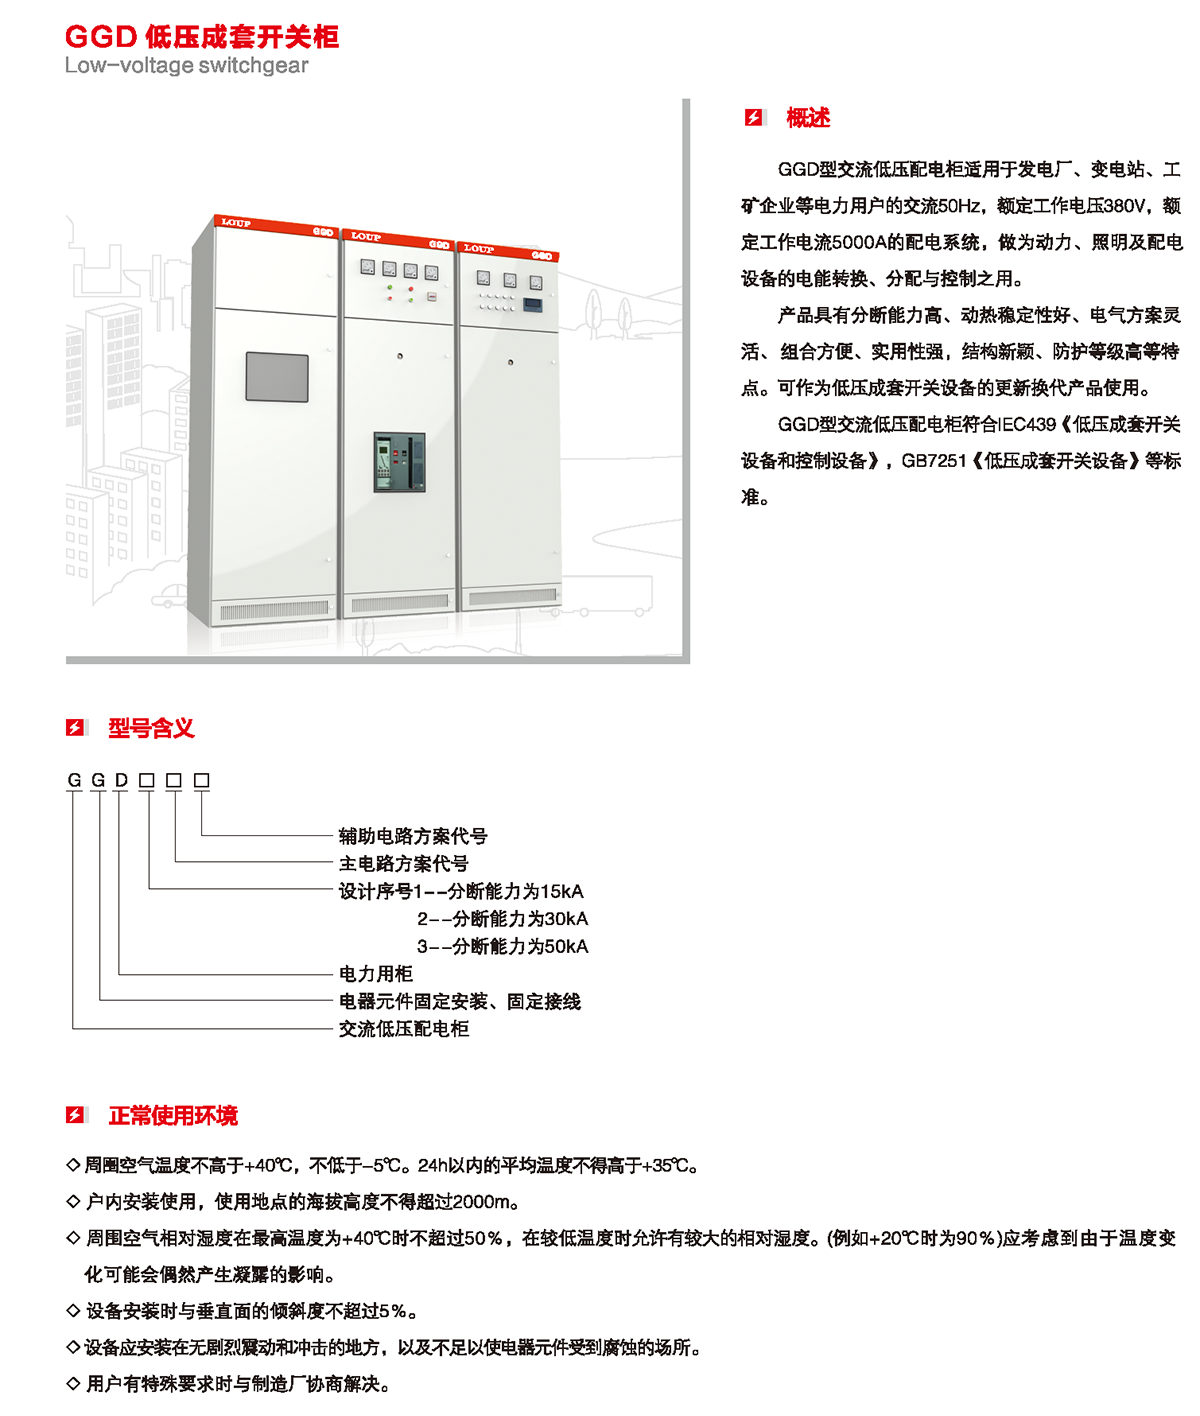 GGD低壓成套開關柜概述、型號含義、正常使用環境